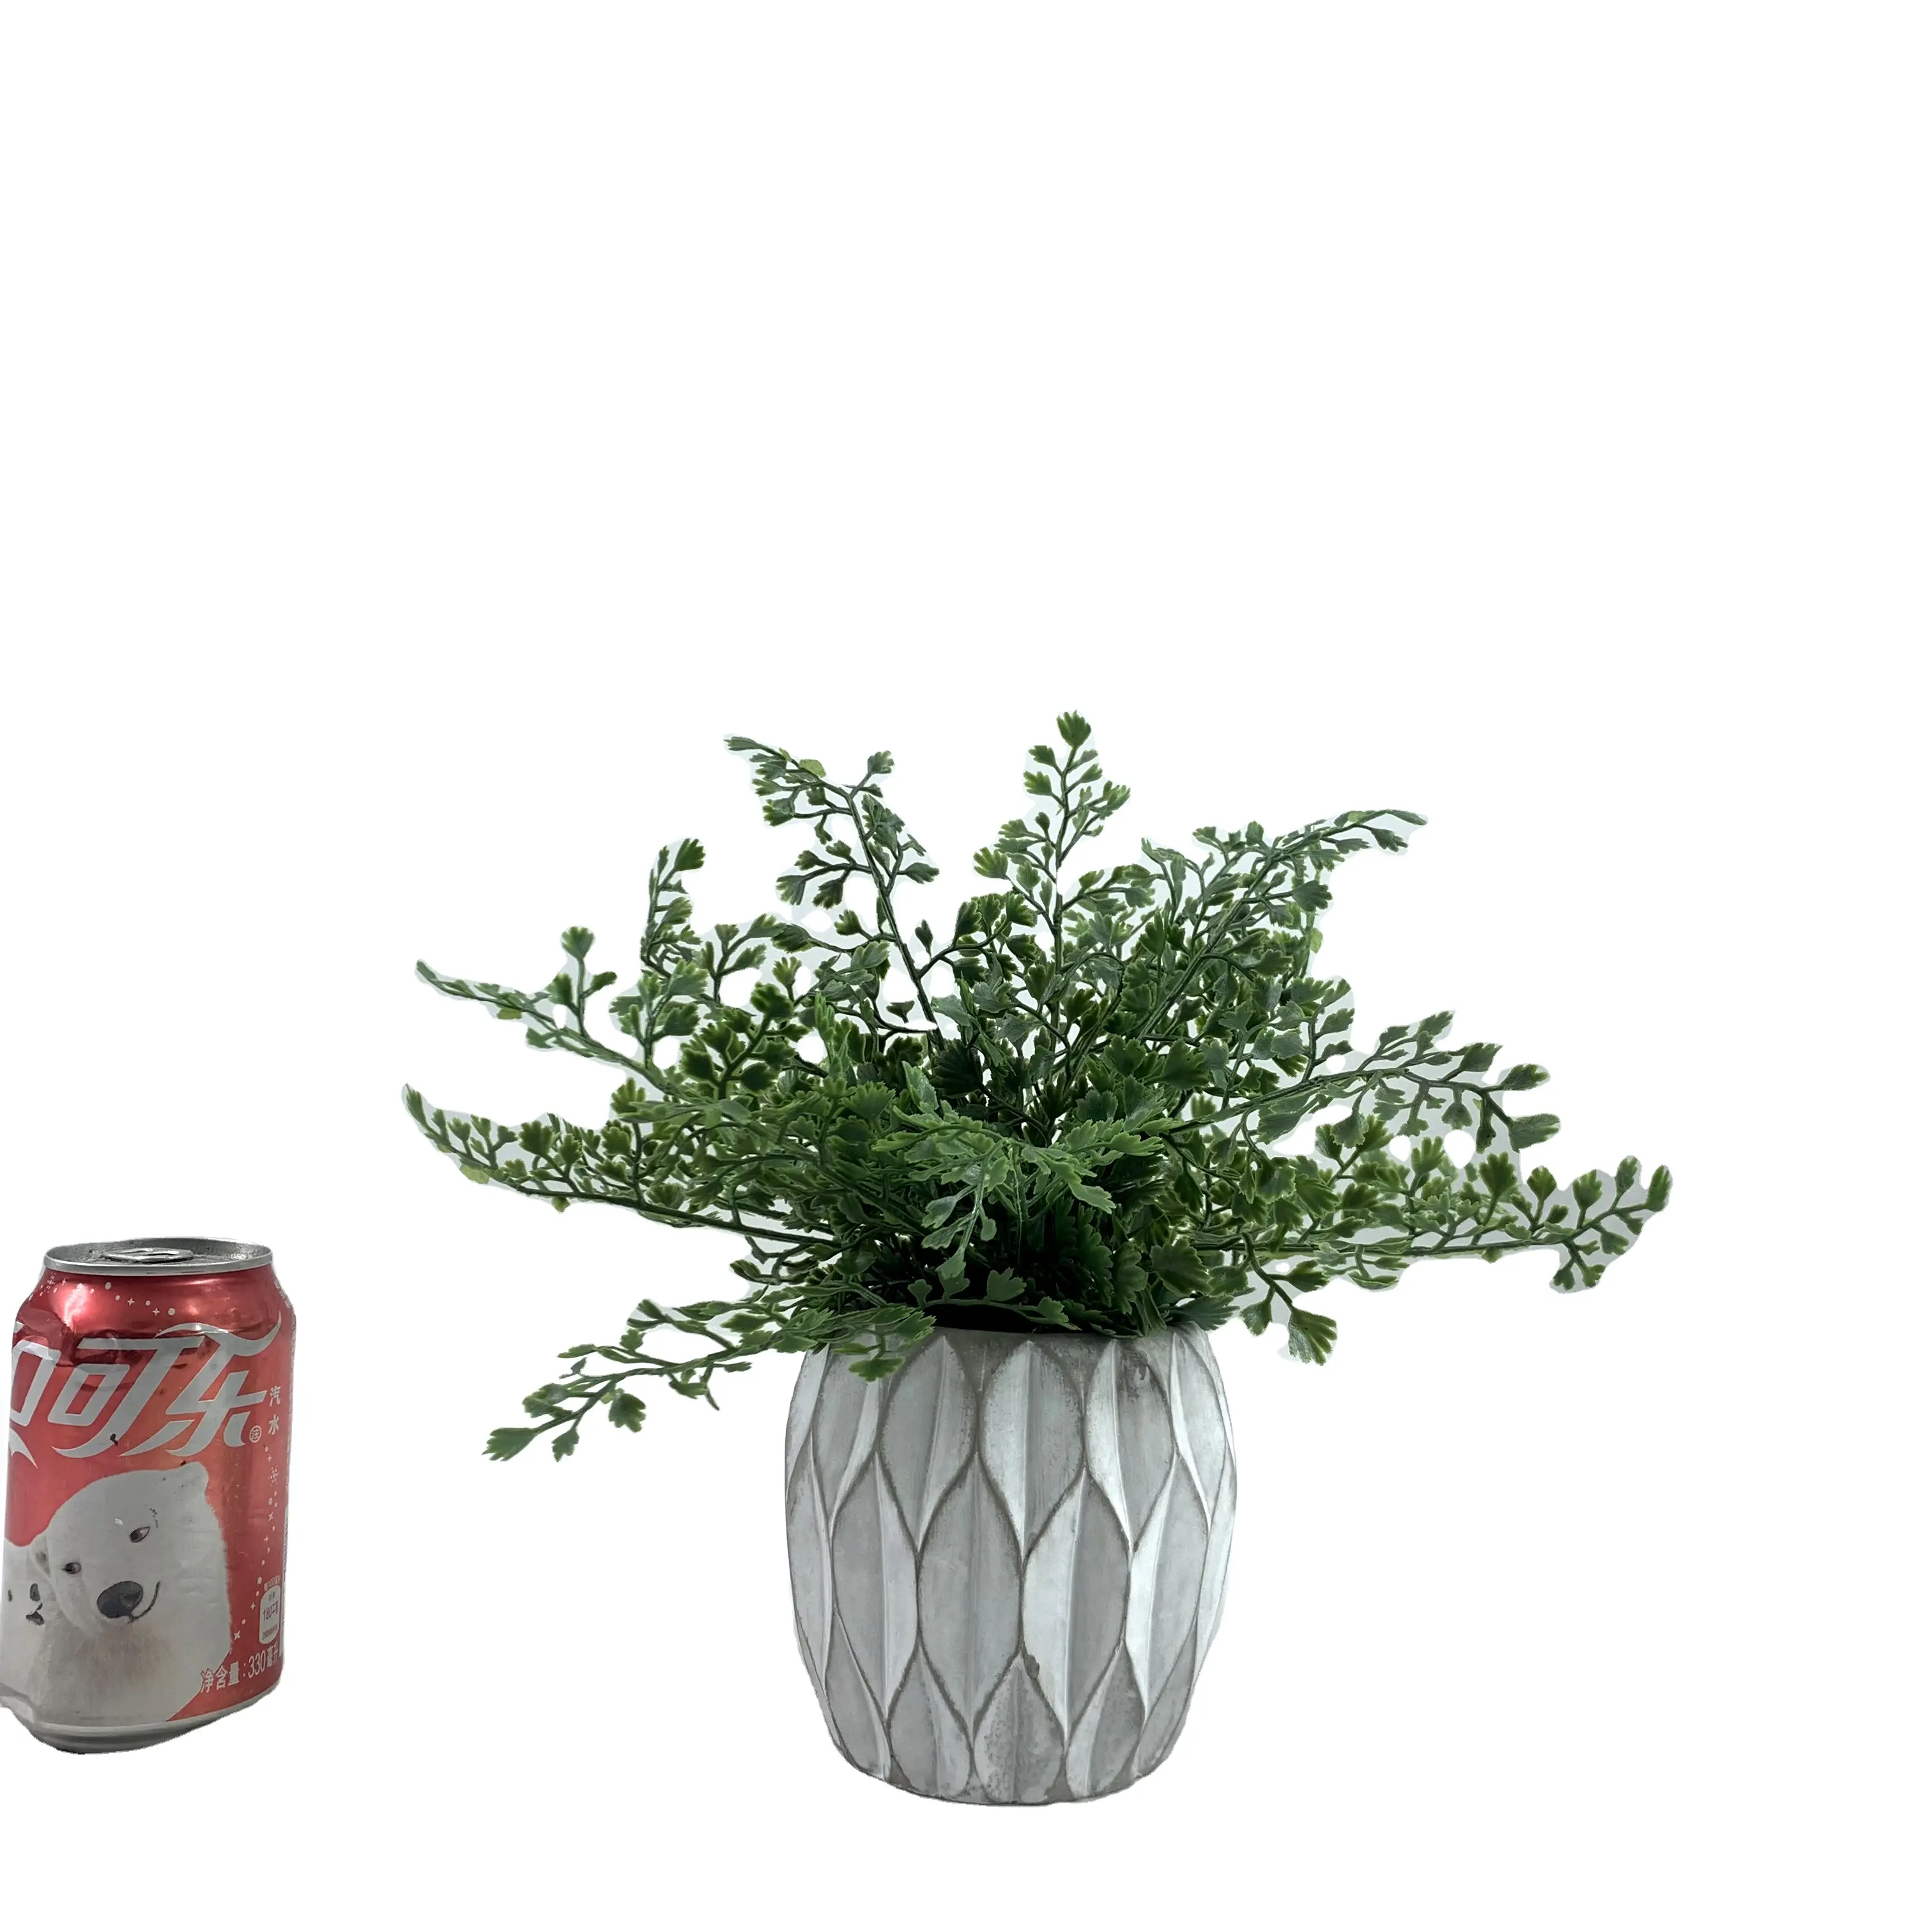 Plante verte artificielle tropicale de style européen, 1 pièce, décoration de plantes en pot, fournitures de balcon, aménagement paysager de noël, bonsaï rétro